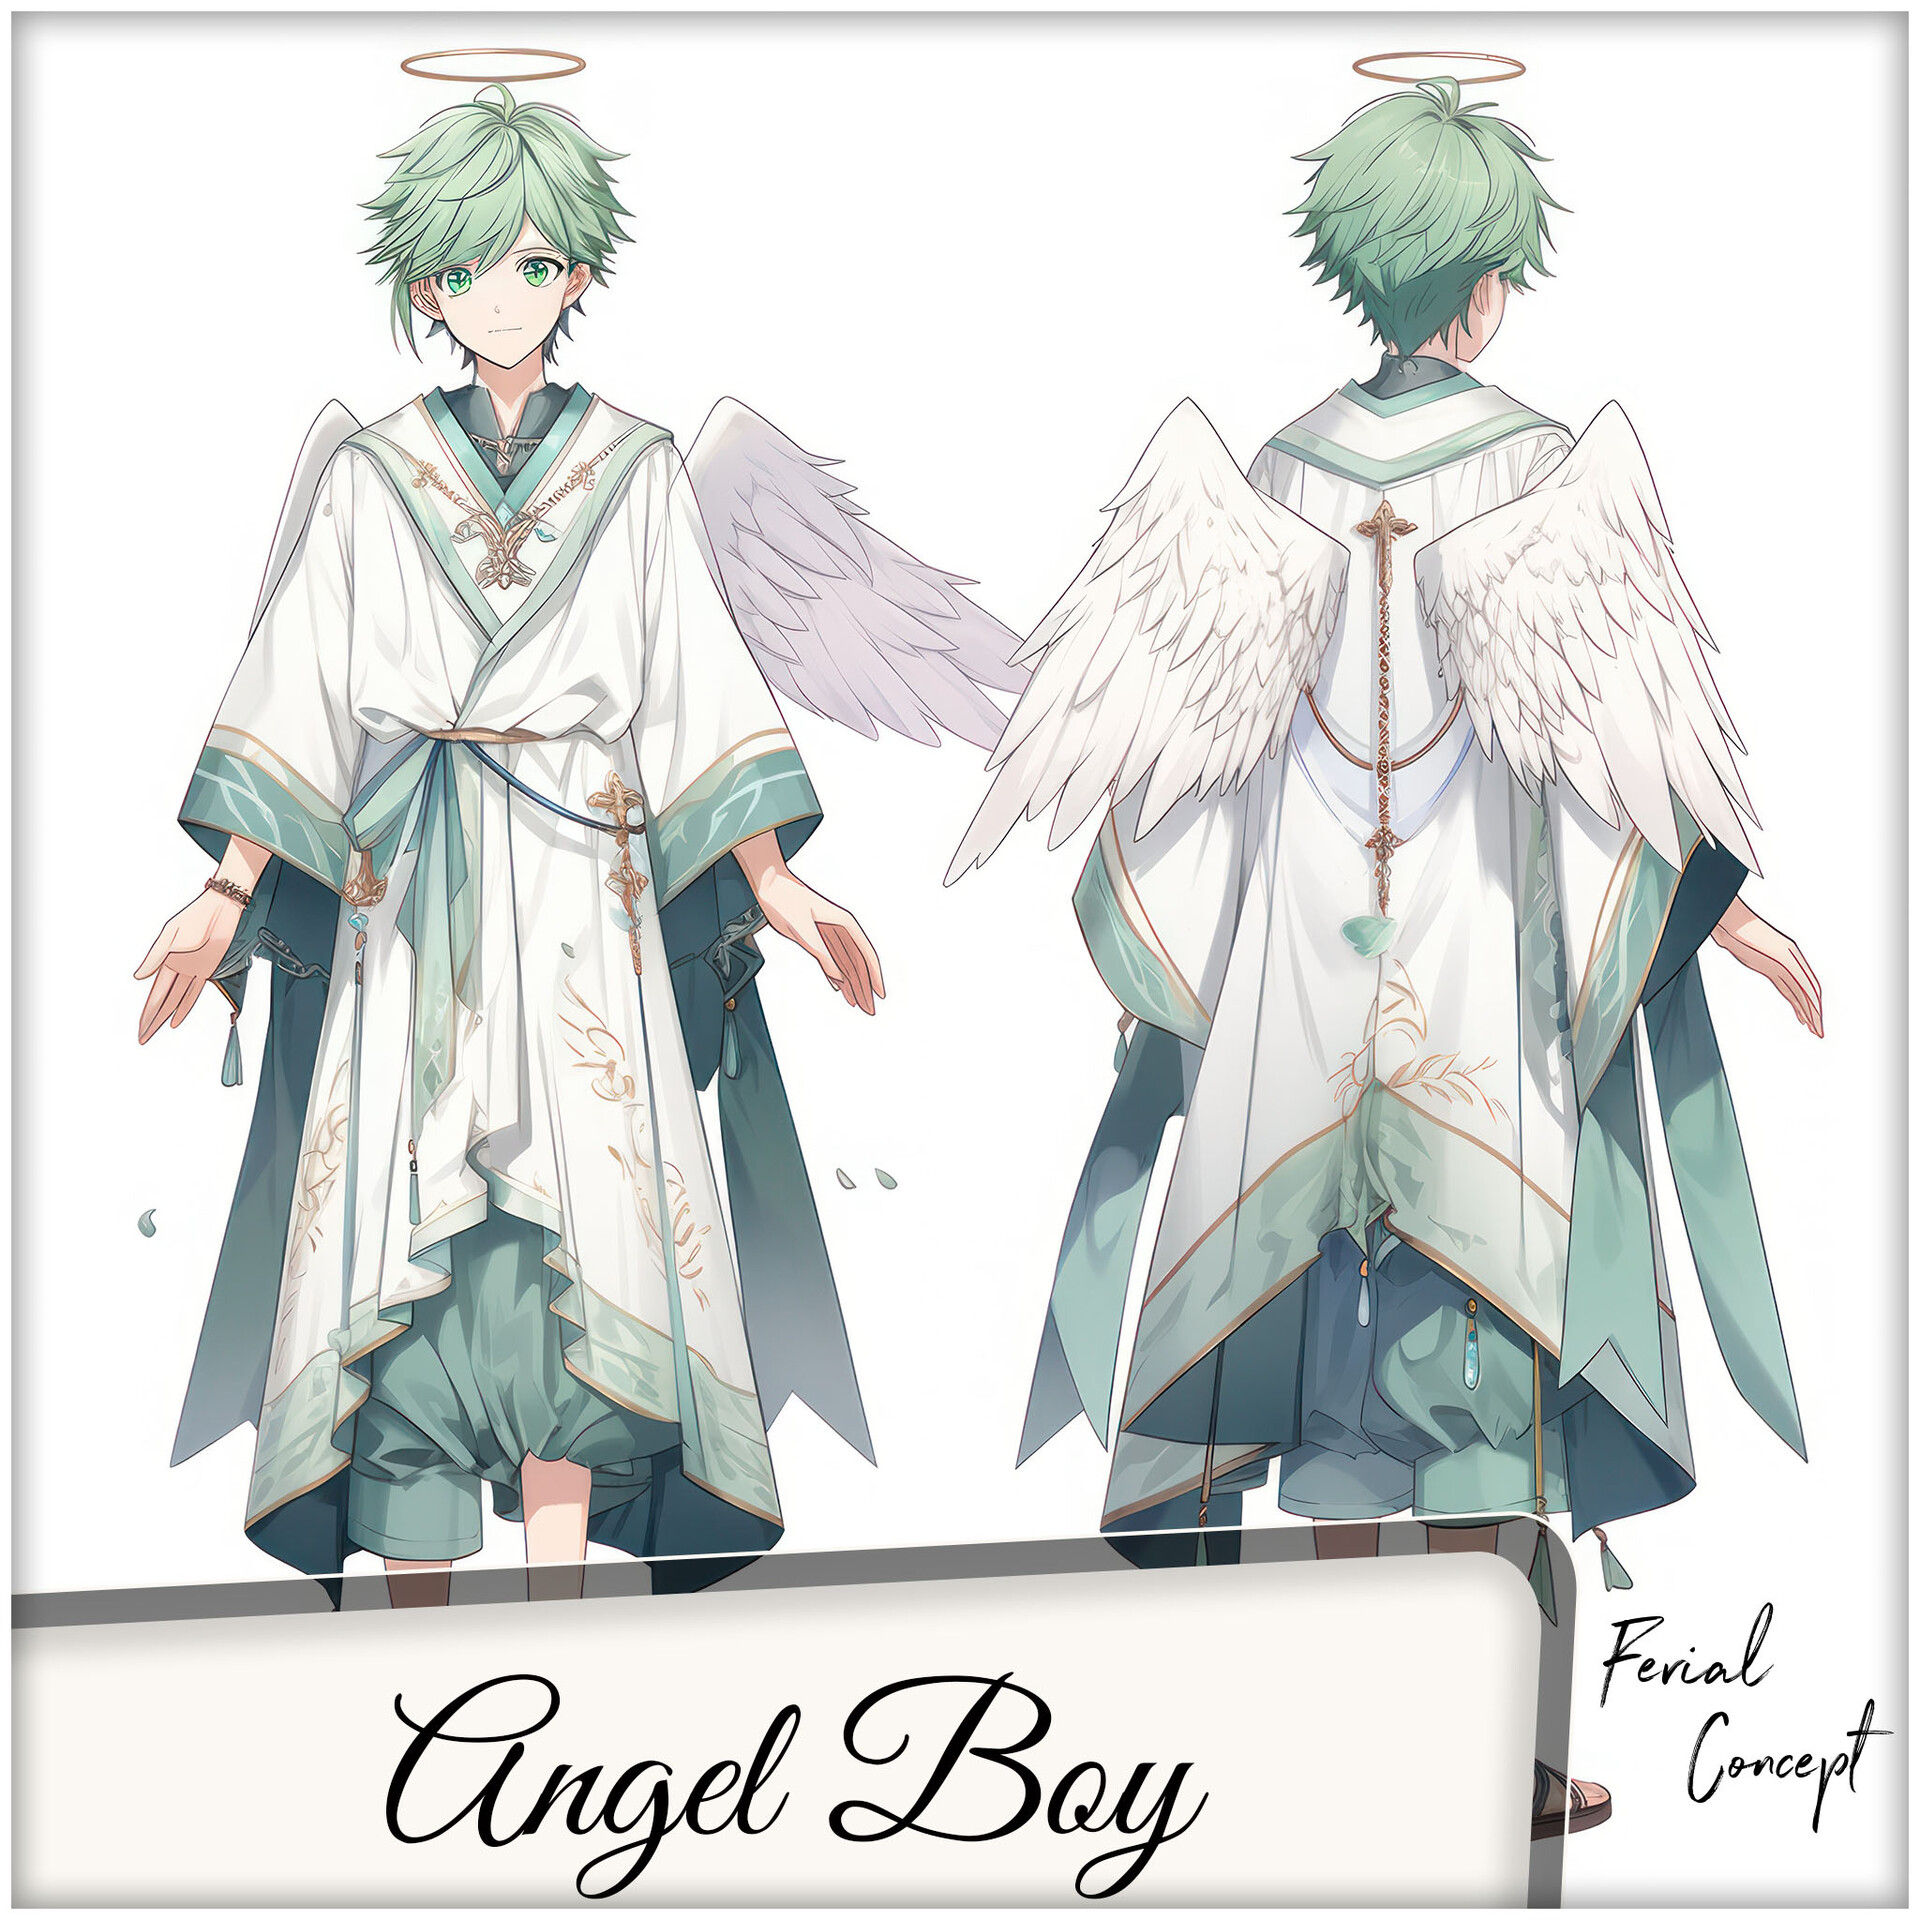 he's beautiful  Anime angel, Anime guys, Anime